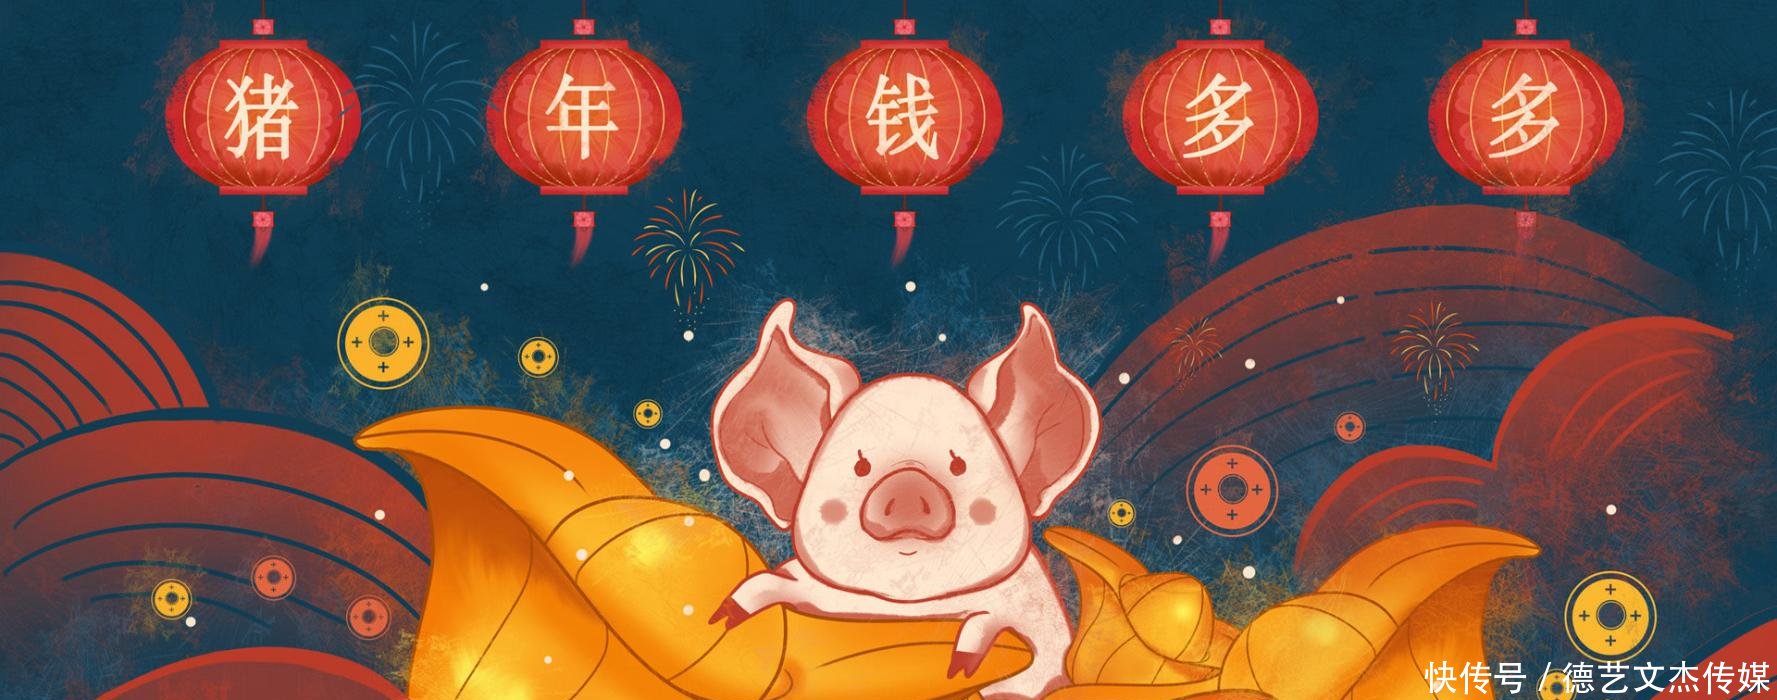 2019年元旦祝福语大全 猪年的第一声问候送上最美好的祝福|2019|年元旦-滚动读报-川北在线